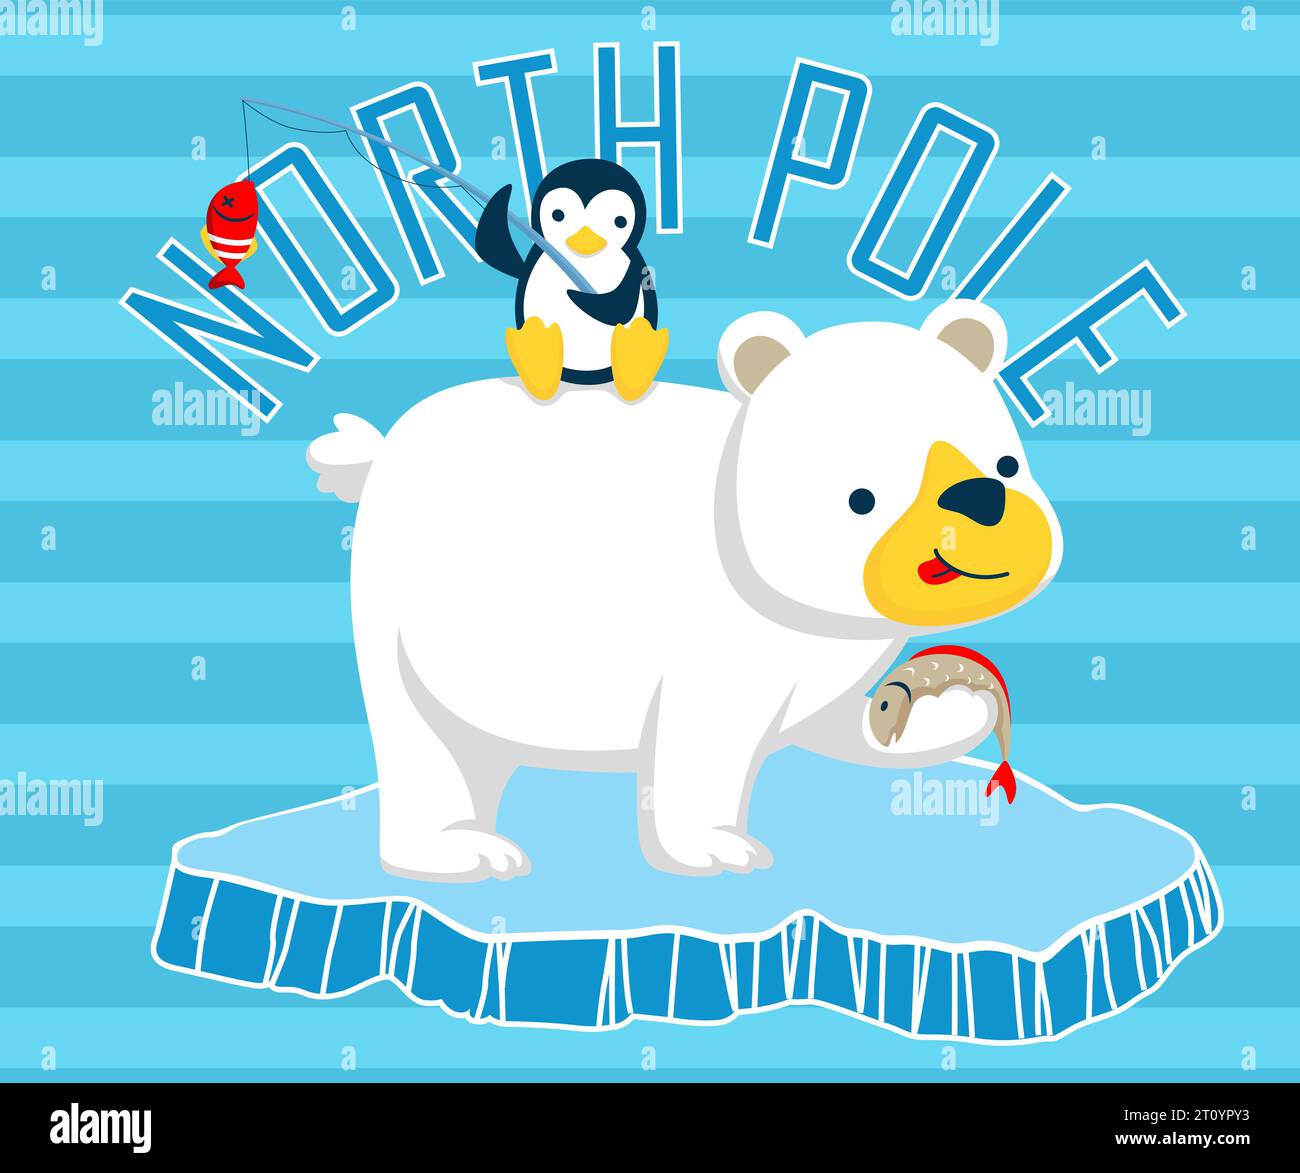 Cartoon von Pinguinen, die auf Eisbären sitzen, Tieren, die auf Eisbrocken fischen Stock Vektor